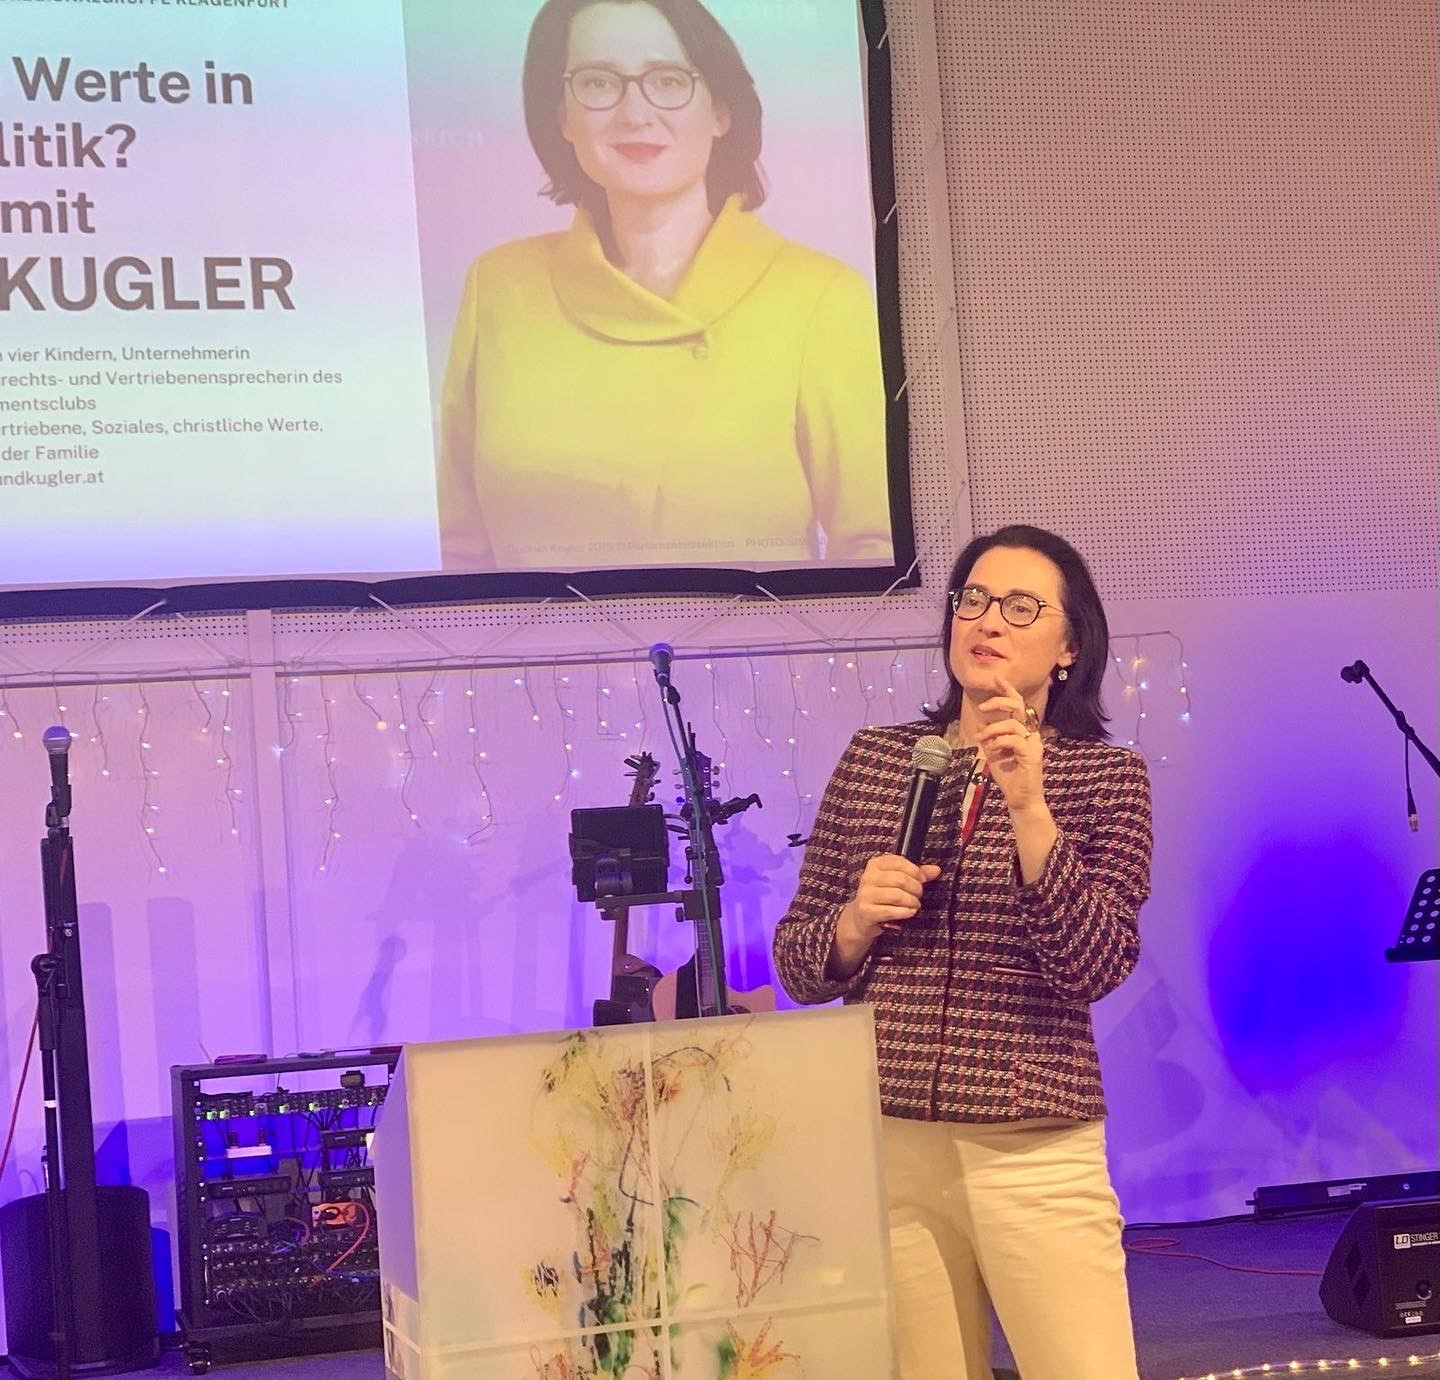 Fragen und Antworten zur Debatte um Werte und um Politik: ÖVP-Abg. Gudrun Kugler bei ihrer Dialog-Tour in Kärnten. Foto: Kugler